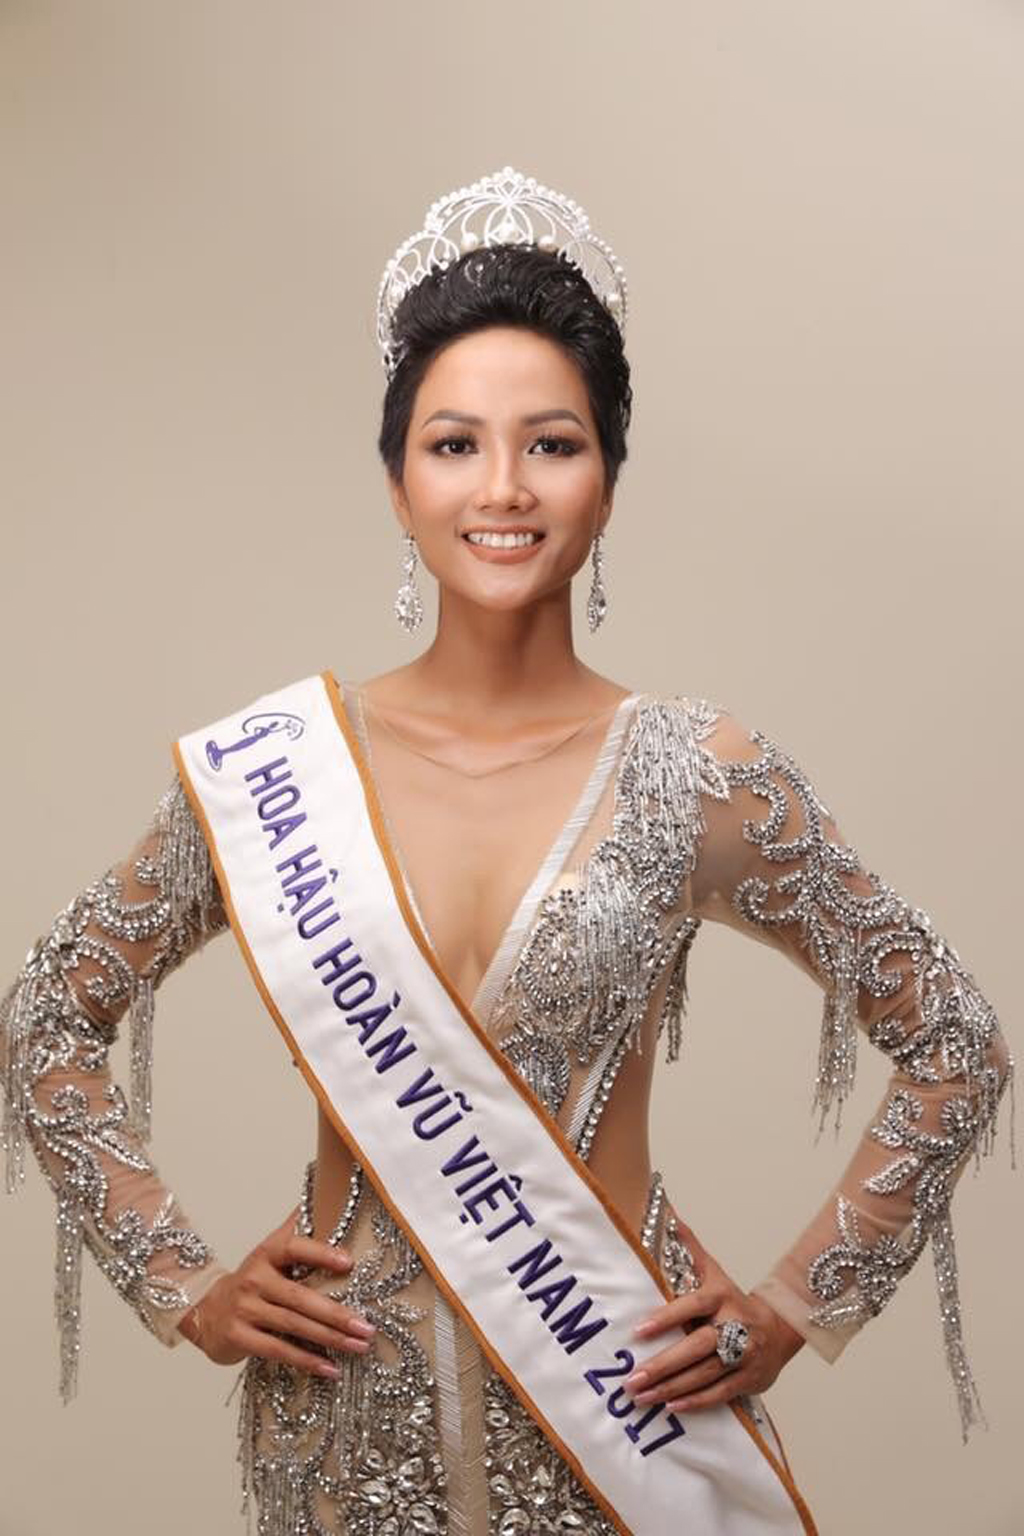 H’Hen Niê đảm nhận cương vị Hoa hậu Hoàn vũ Việt Nam trong 2 năm tới, với rất nhiều những hoạt động ý nghĩa, mang tính nhân văn vì cộng đồng